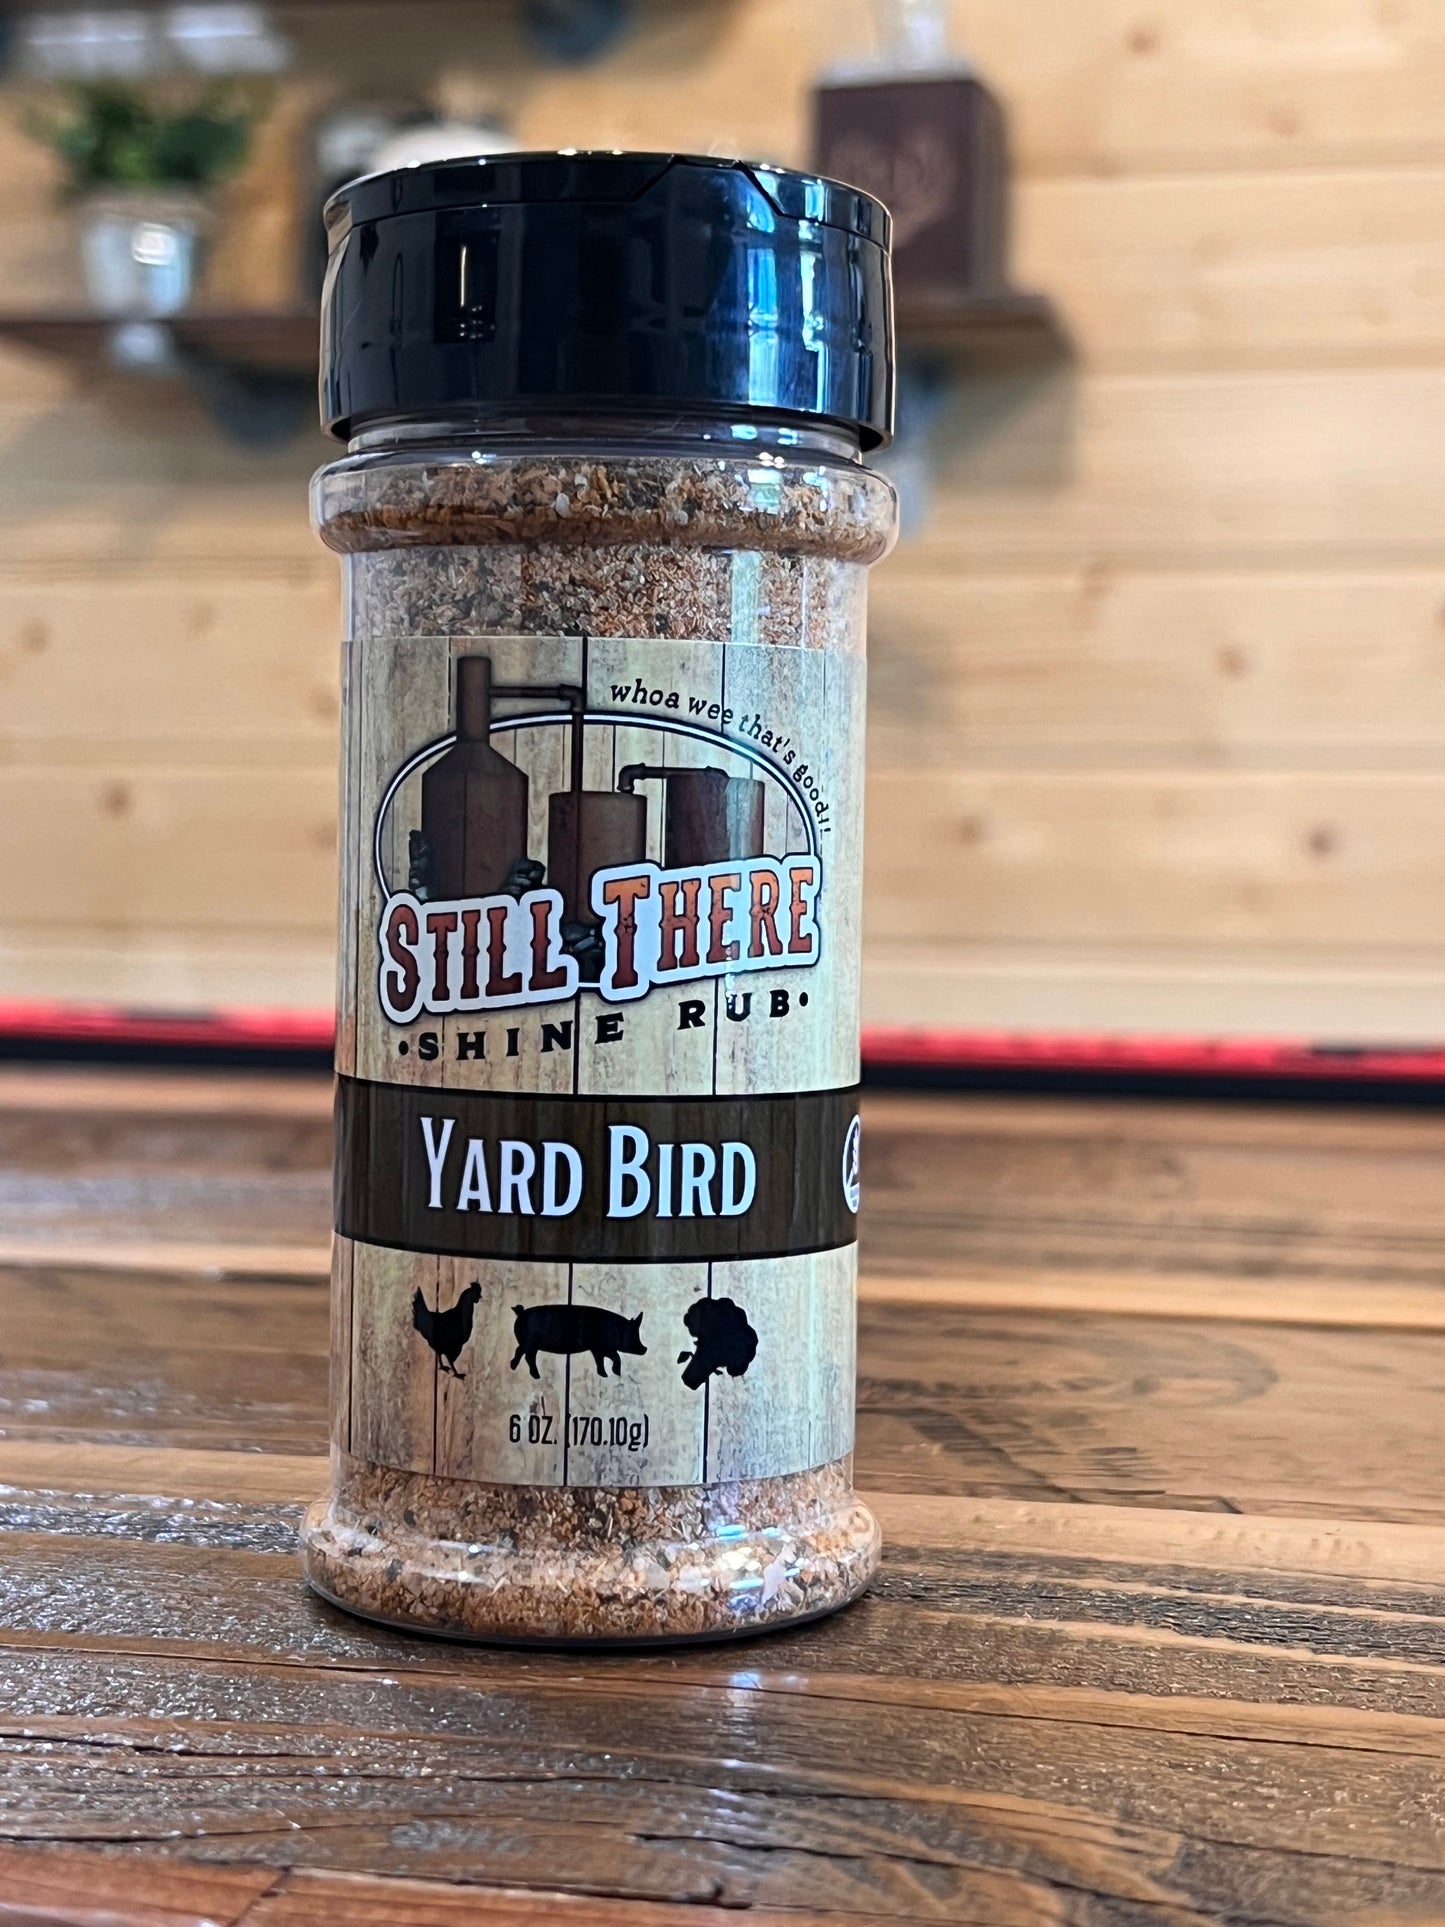 Yard Bird Rub - Still There Shine Sauce 6 oz bottle